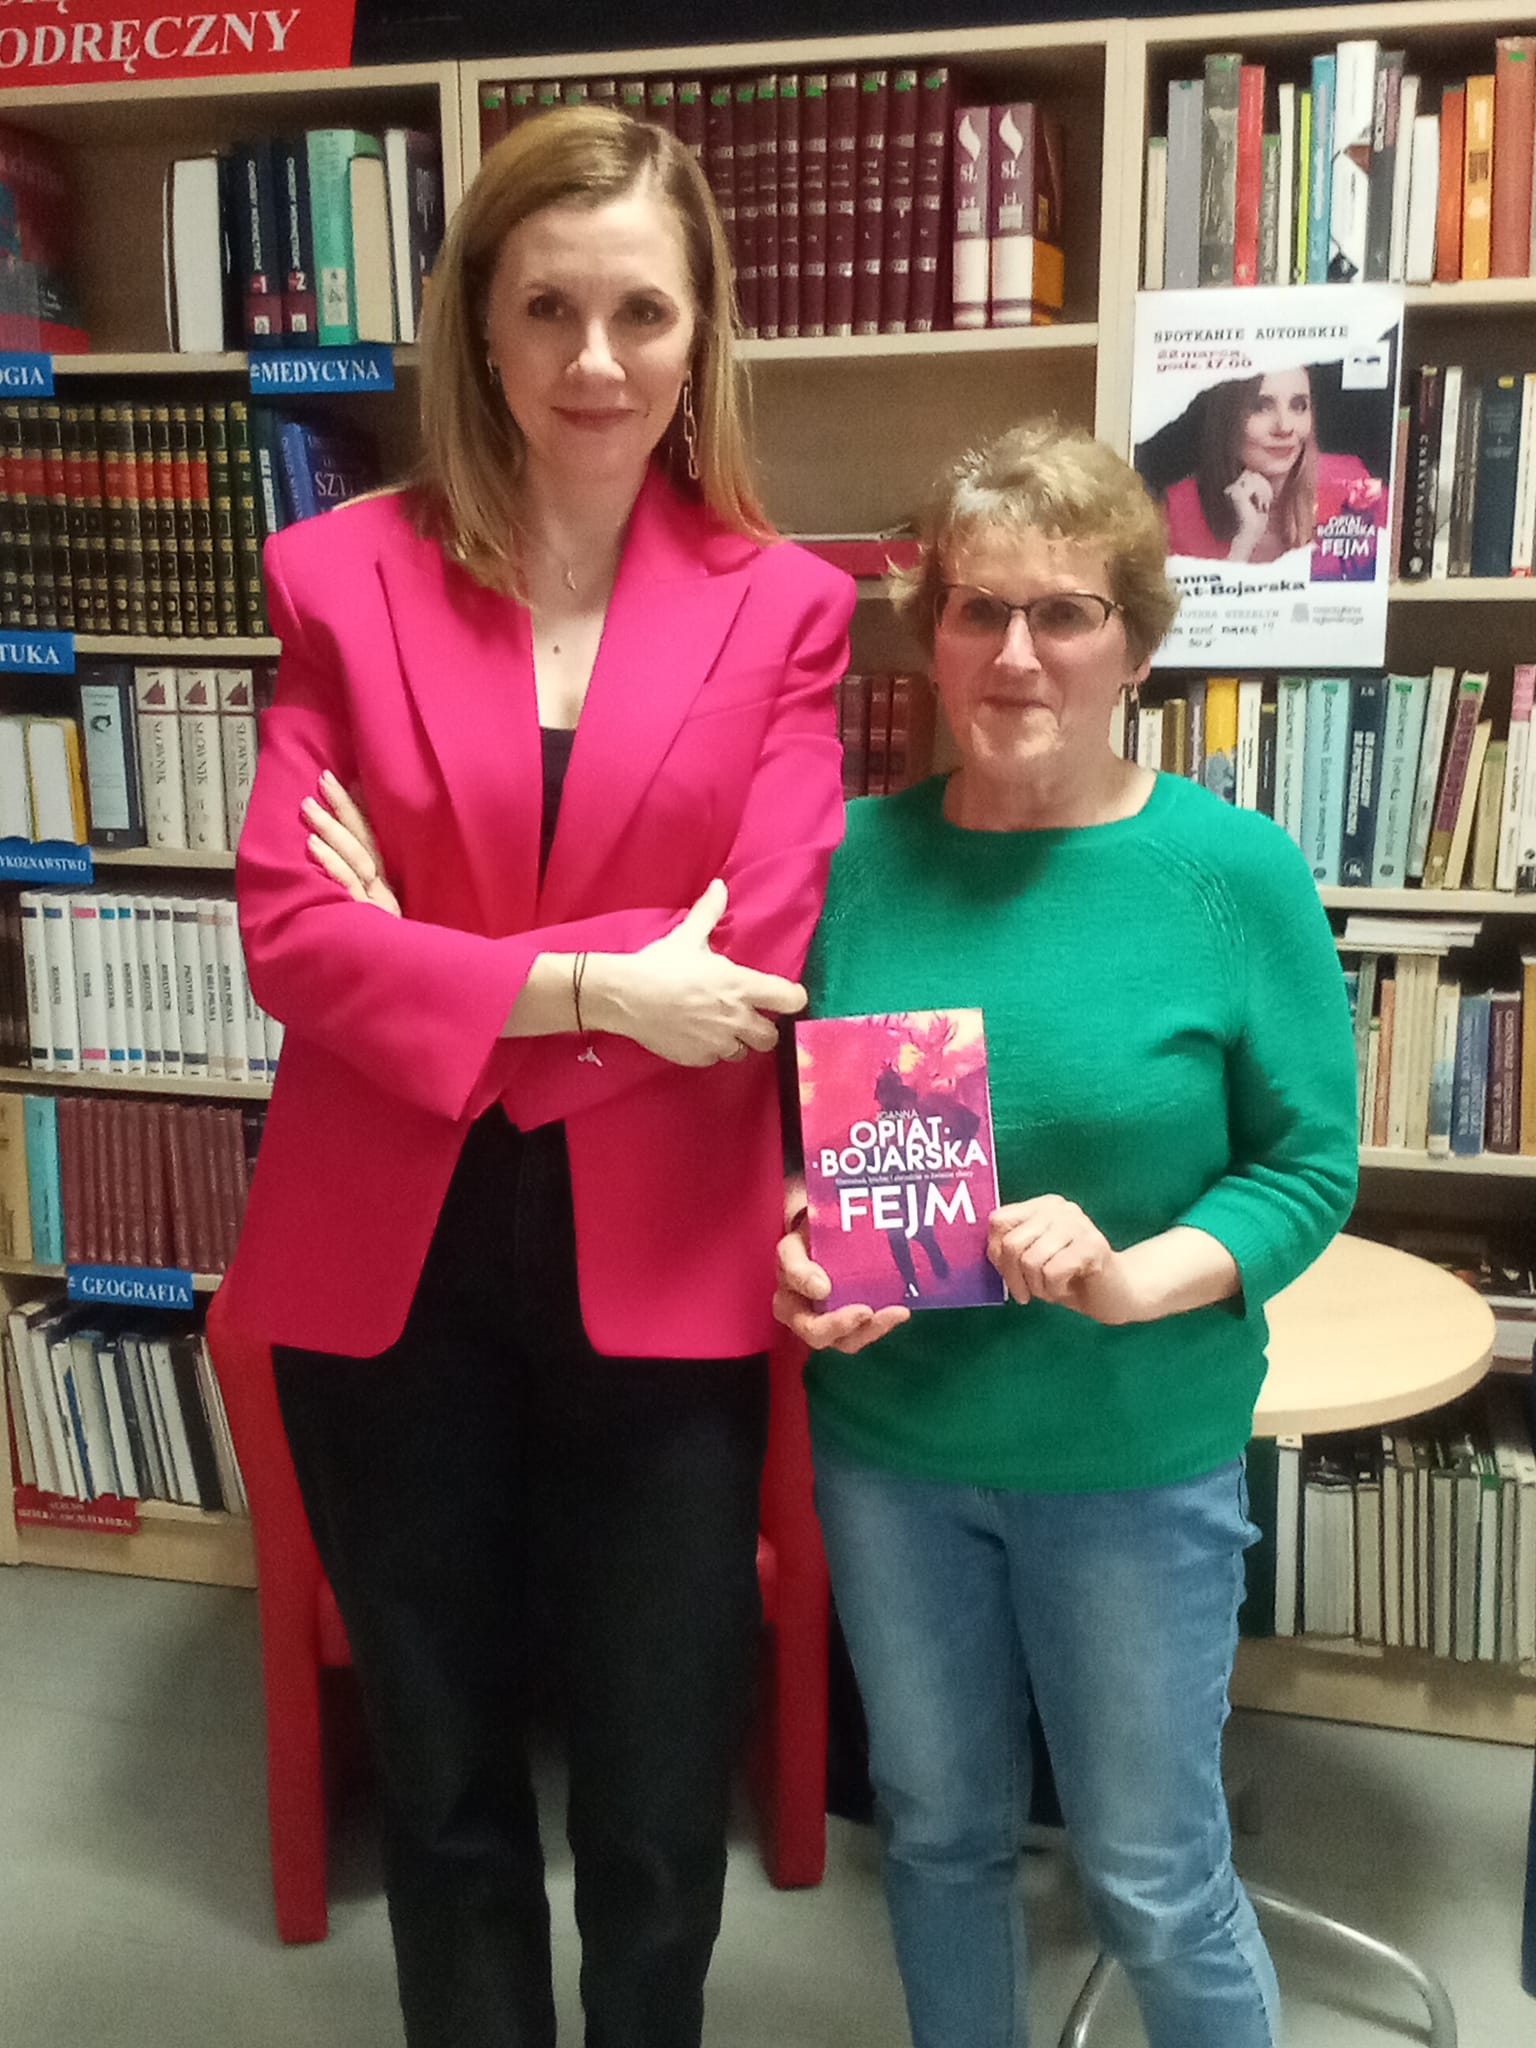 zytelnia biblioteki, spotkanie autorskie z Joanną Opiat-Bojarską, dwie kobiety stoją obok siebie i pozują do zdjęcia